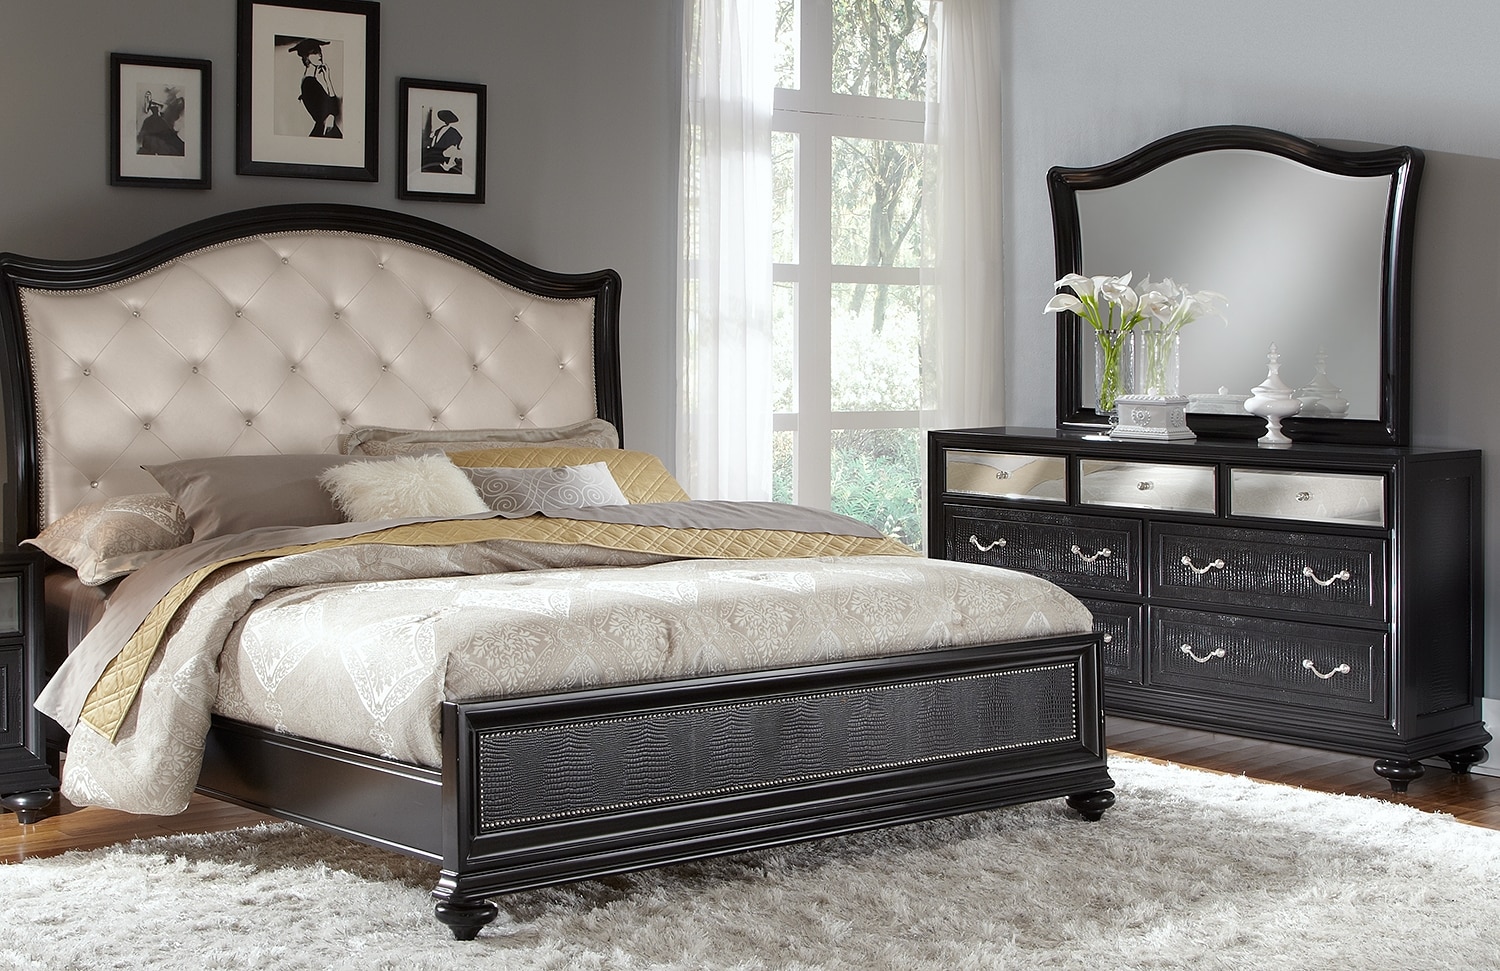 value bedroom furniture set